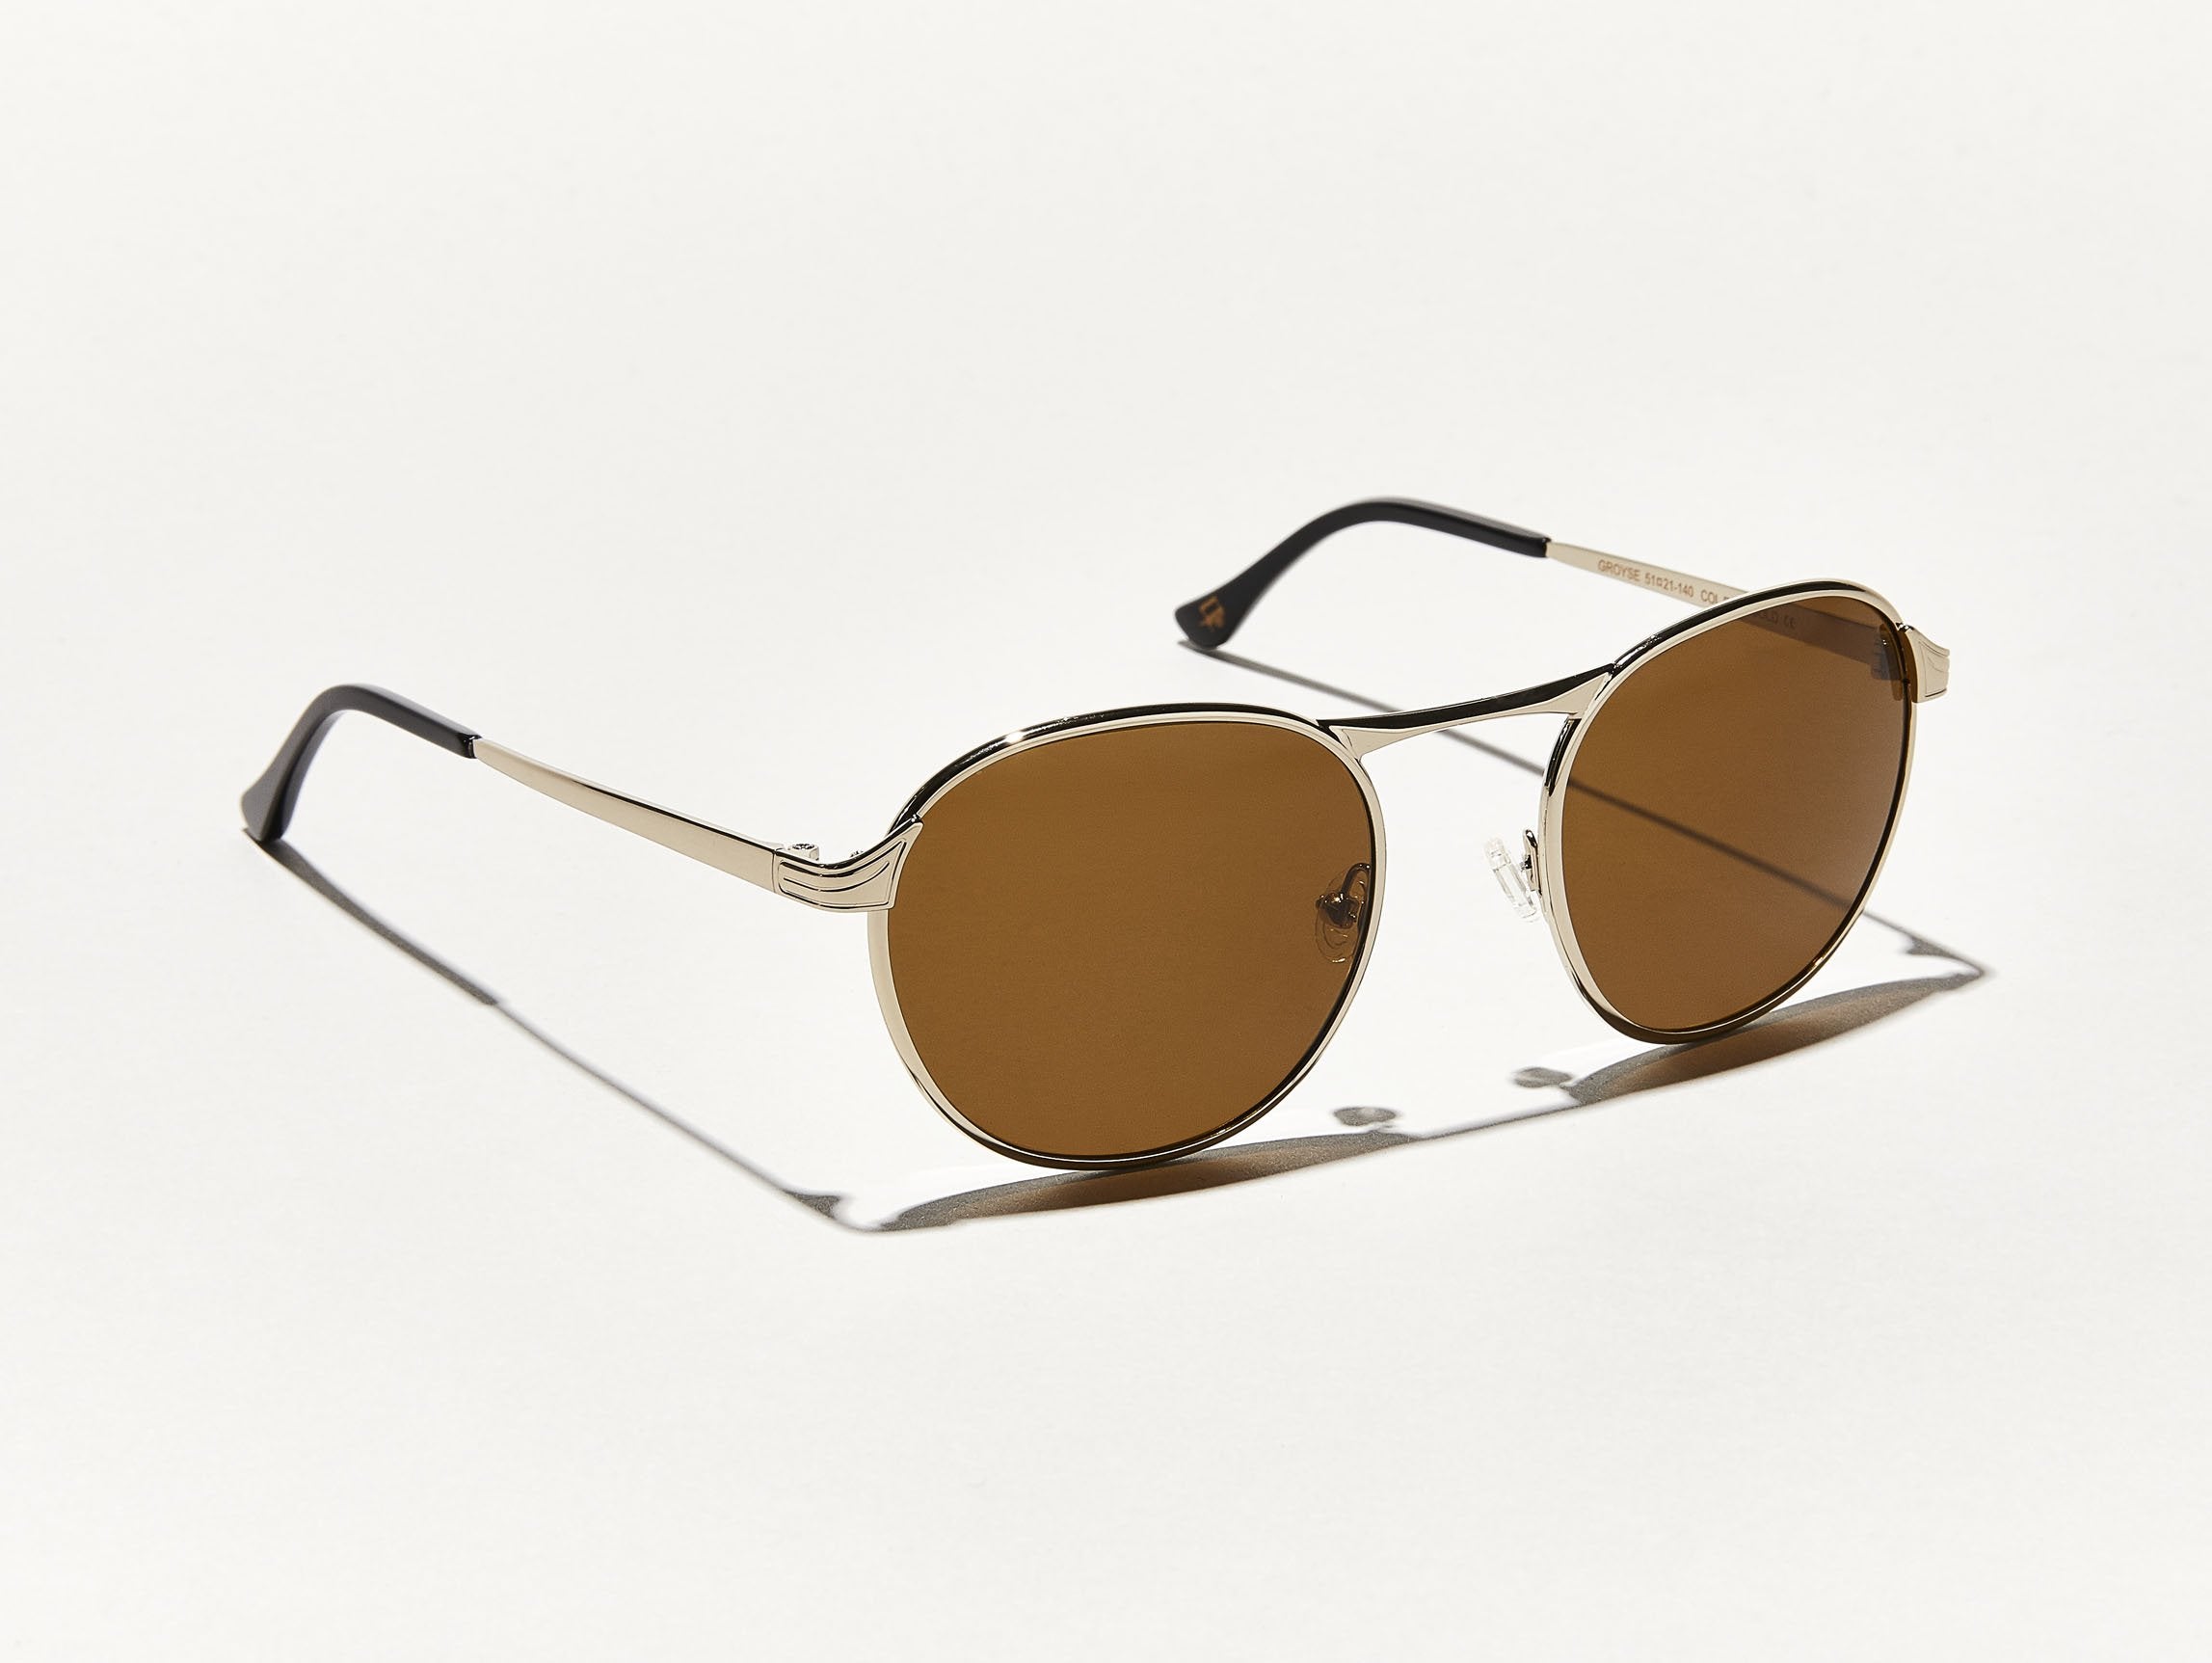 Aviator Square Sunglasses in Brown